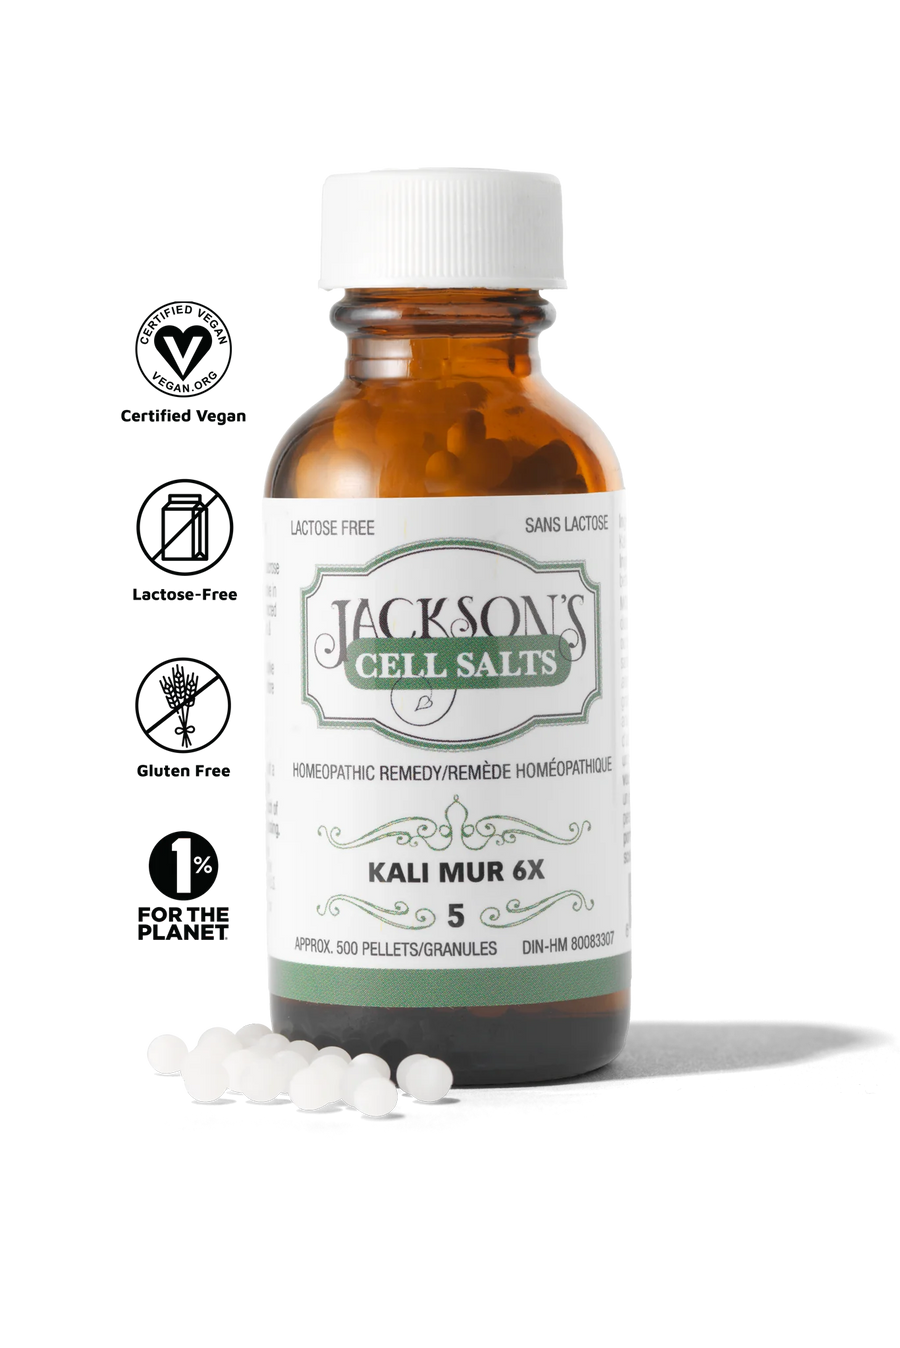 Jackson’s #5 Kali Mur 6x (Potassium Chloride) Schuessler Mineral Cell Salt